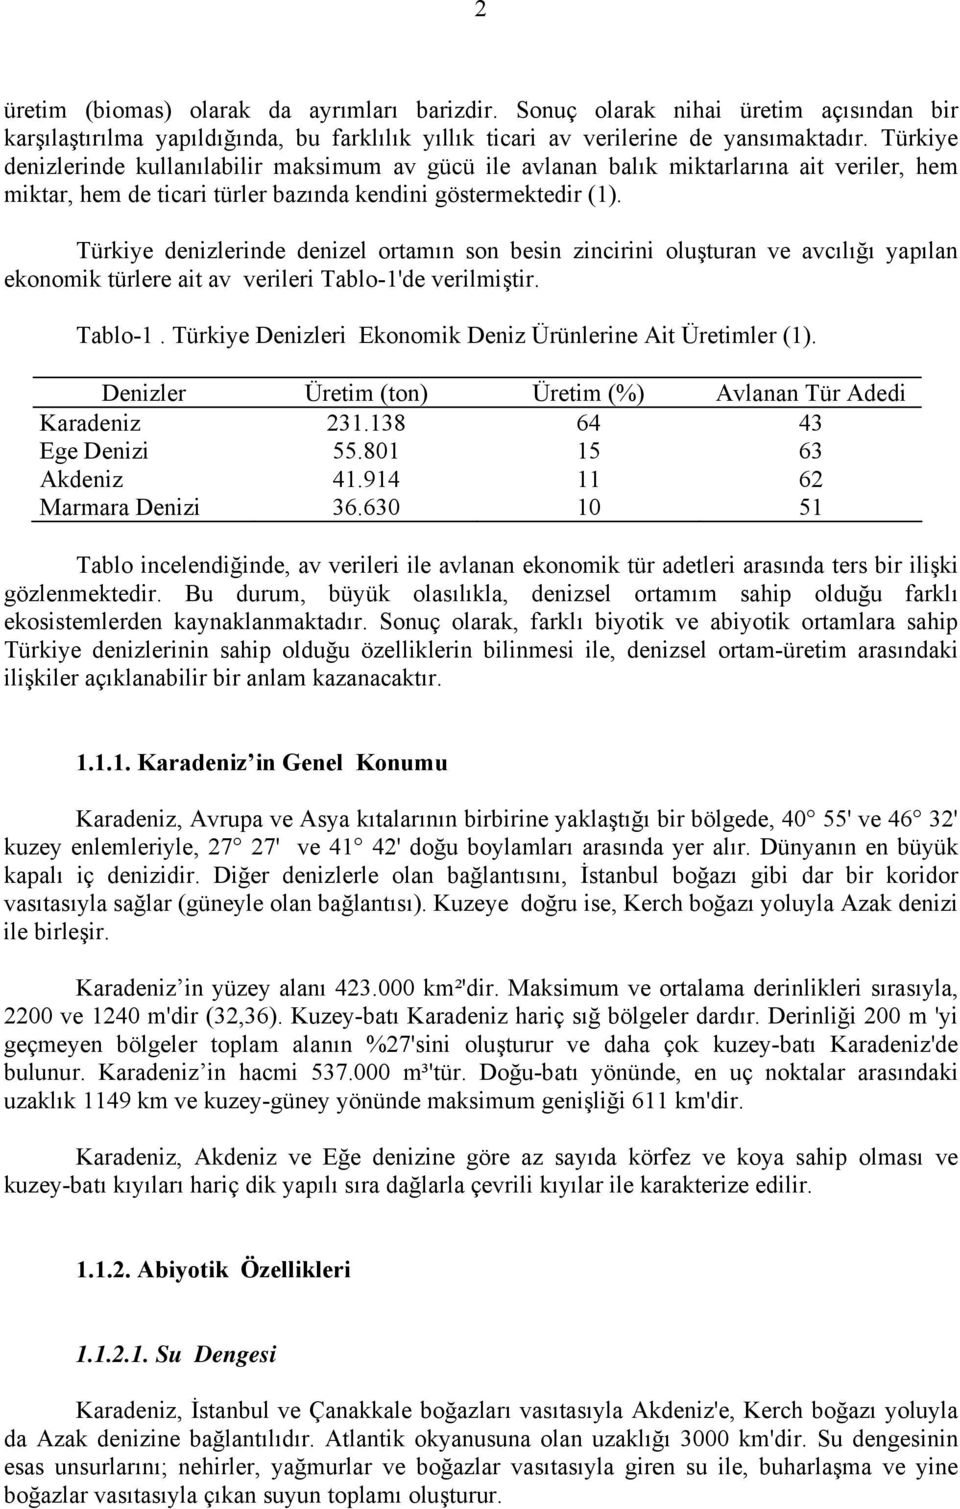 Türkiye denizlerinde denizel ortamın son besin zincirini oluşturan ve avcılığı yapılan ekonomik türlere ait av verileri Tablo1'de verilmiştir. Tablo1. Türkiye Denizleri Ekonomik Deniz Ürünlerine Ait Üretimler (1).